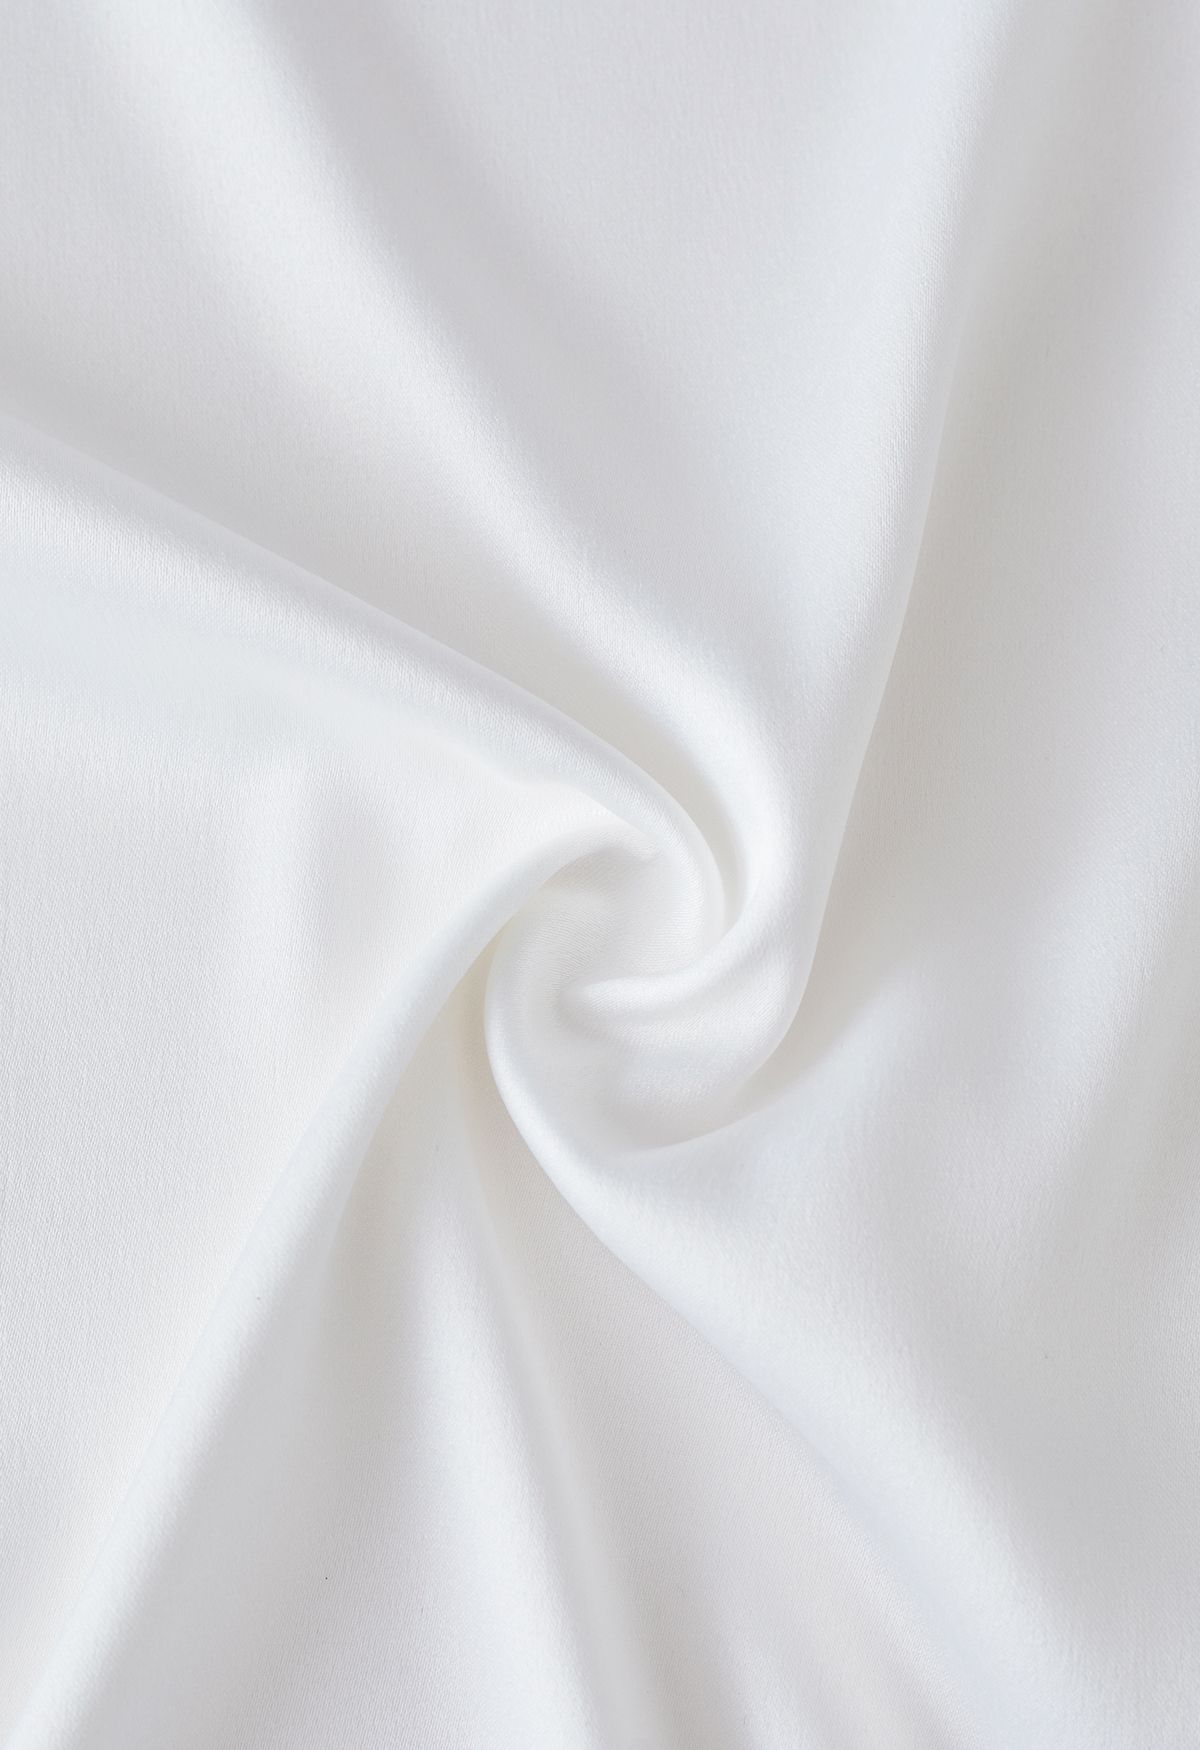 Feather Trim Cuffs Satin Shirt in White